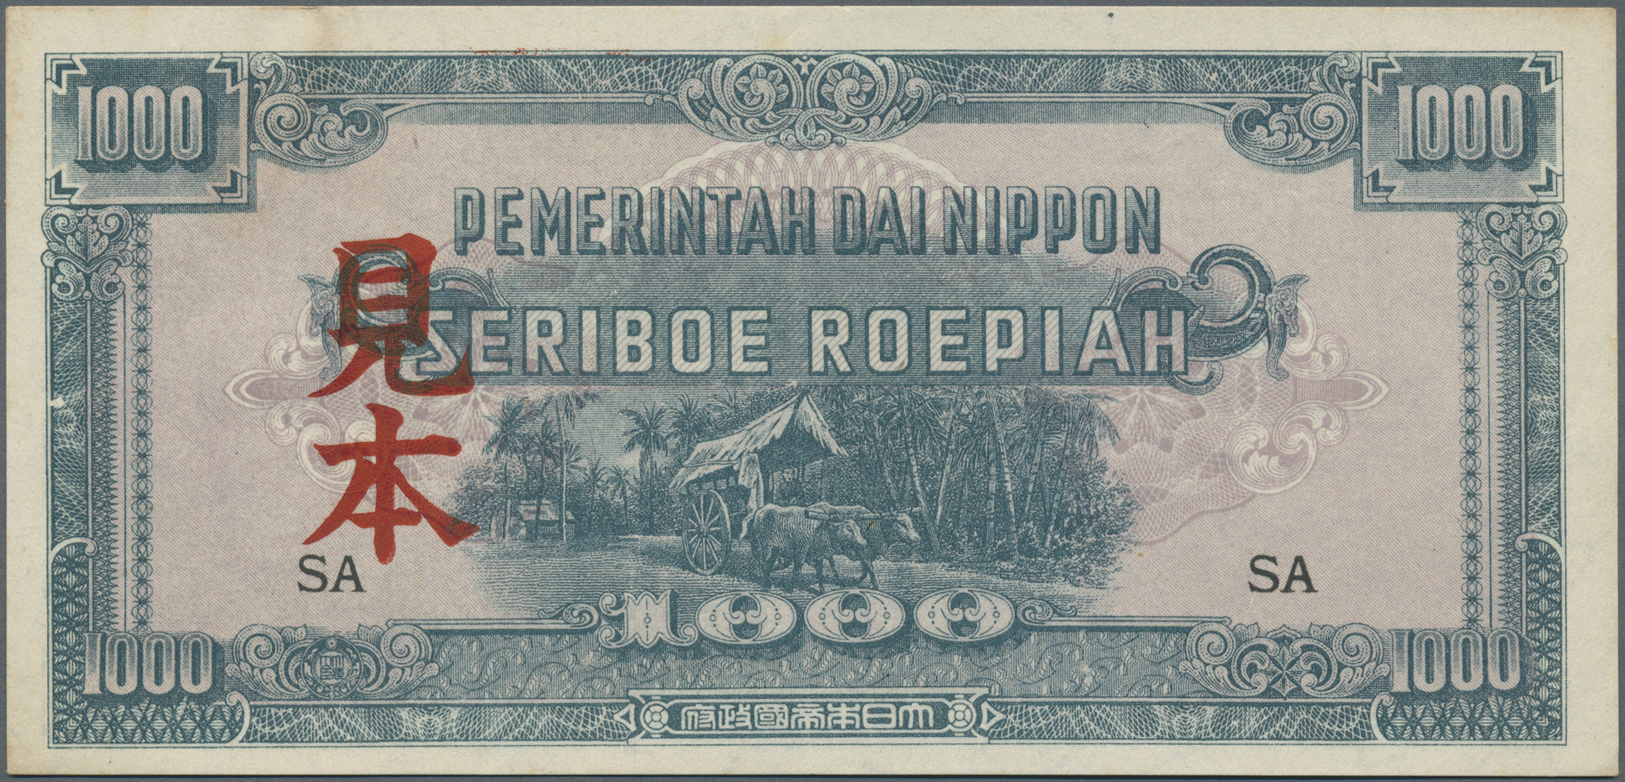 01803 Netherlands Indies / Niederländisch Indien: 1000 Rupiah ND P. 127s, With Specimen Overprint, Rusty Trace Of Paper - Dutch East Indies